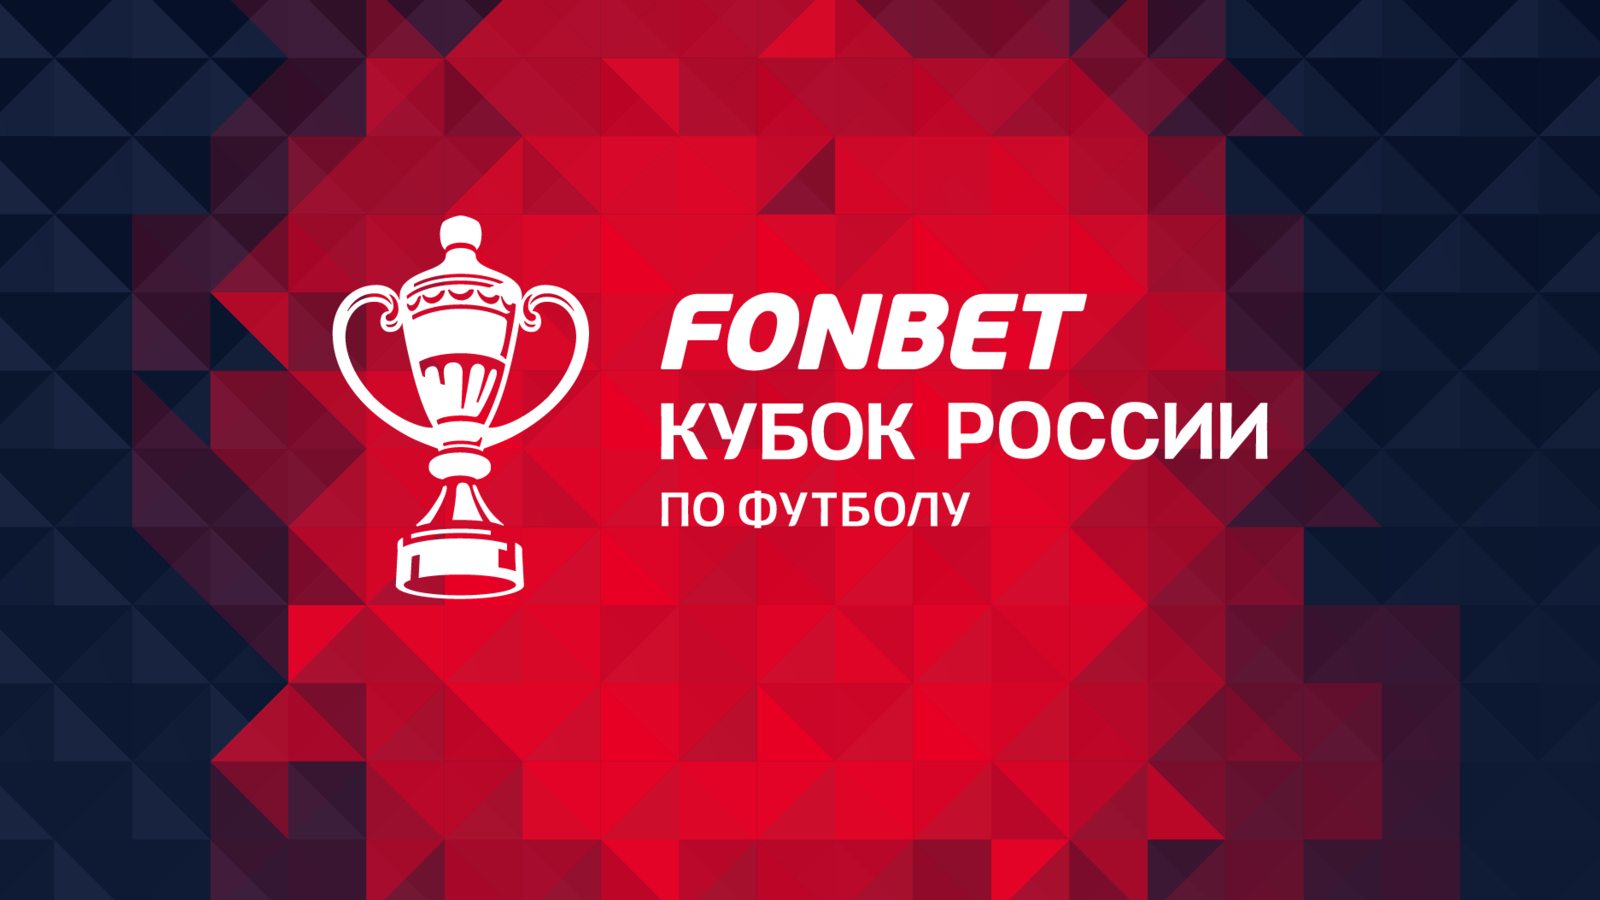 Финал Пути регионов FONBET Кубка России пройдёт 14 мая